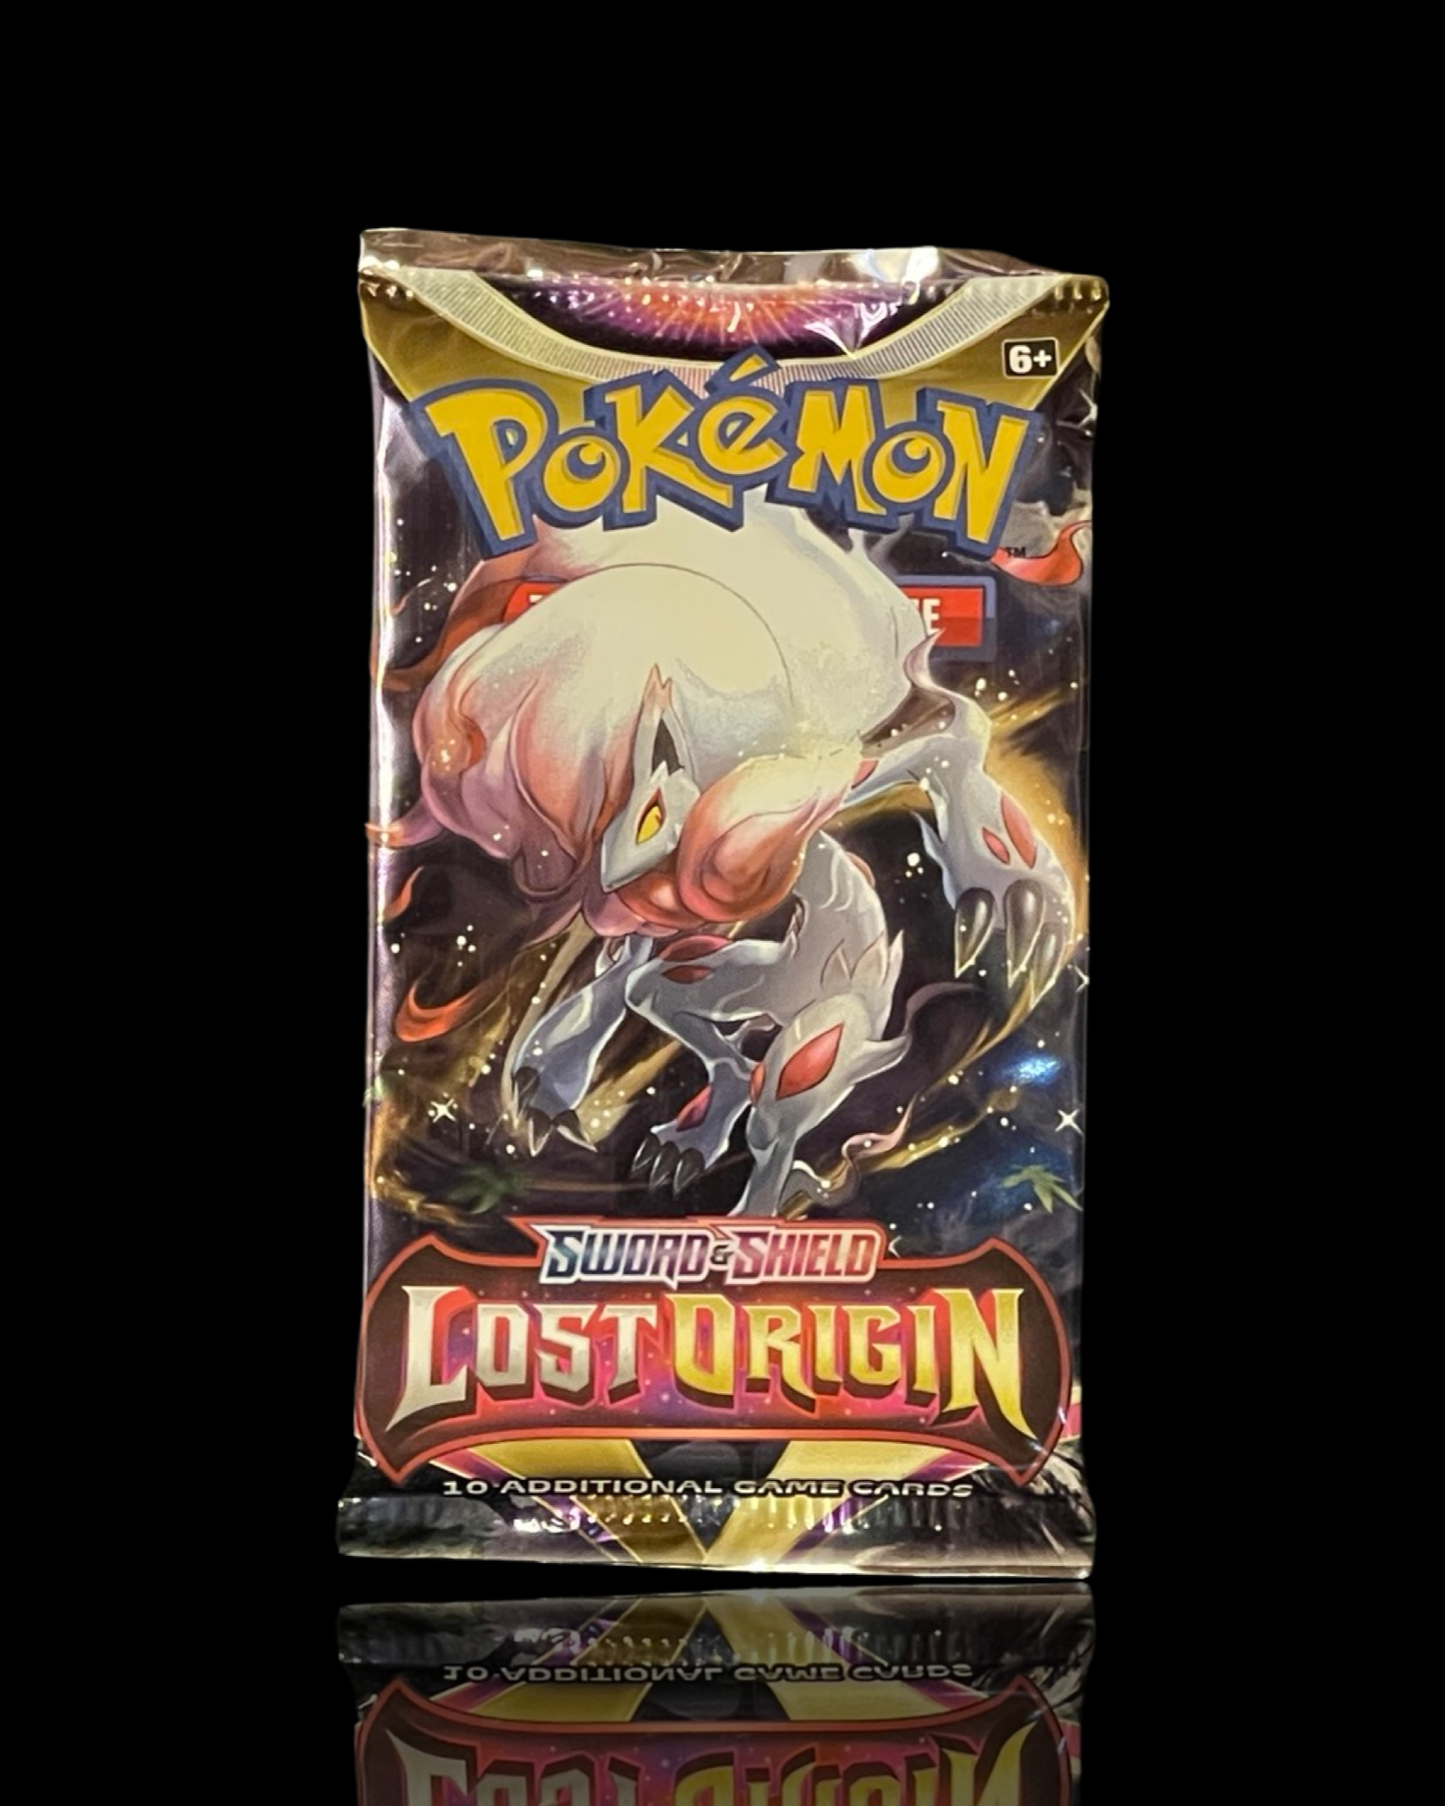 Lost Origin Booster Pack